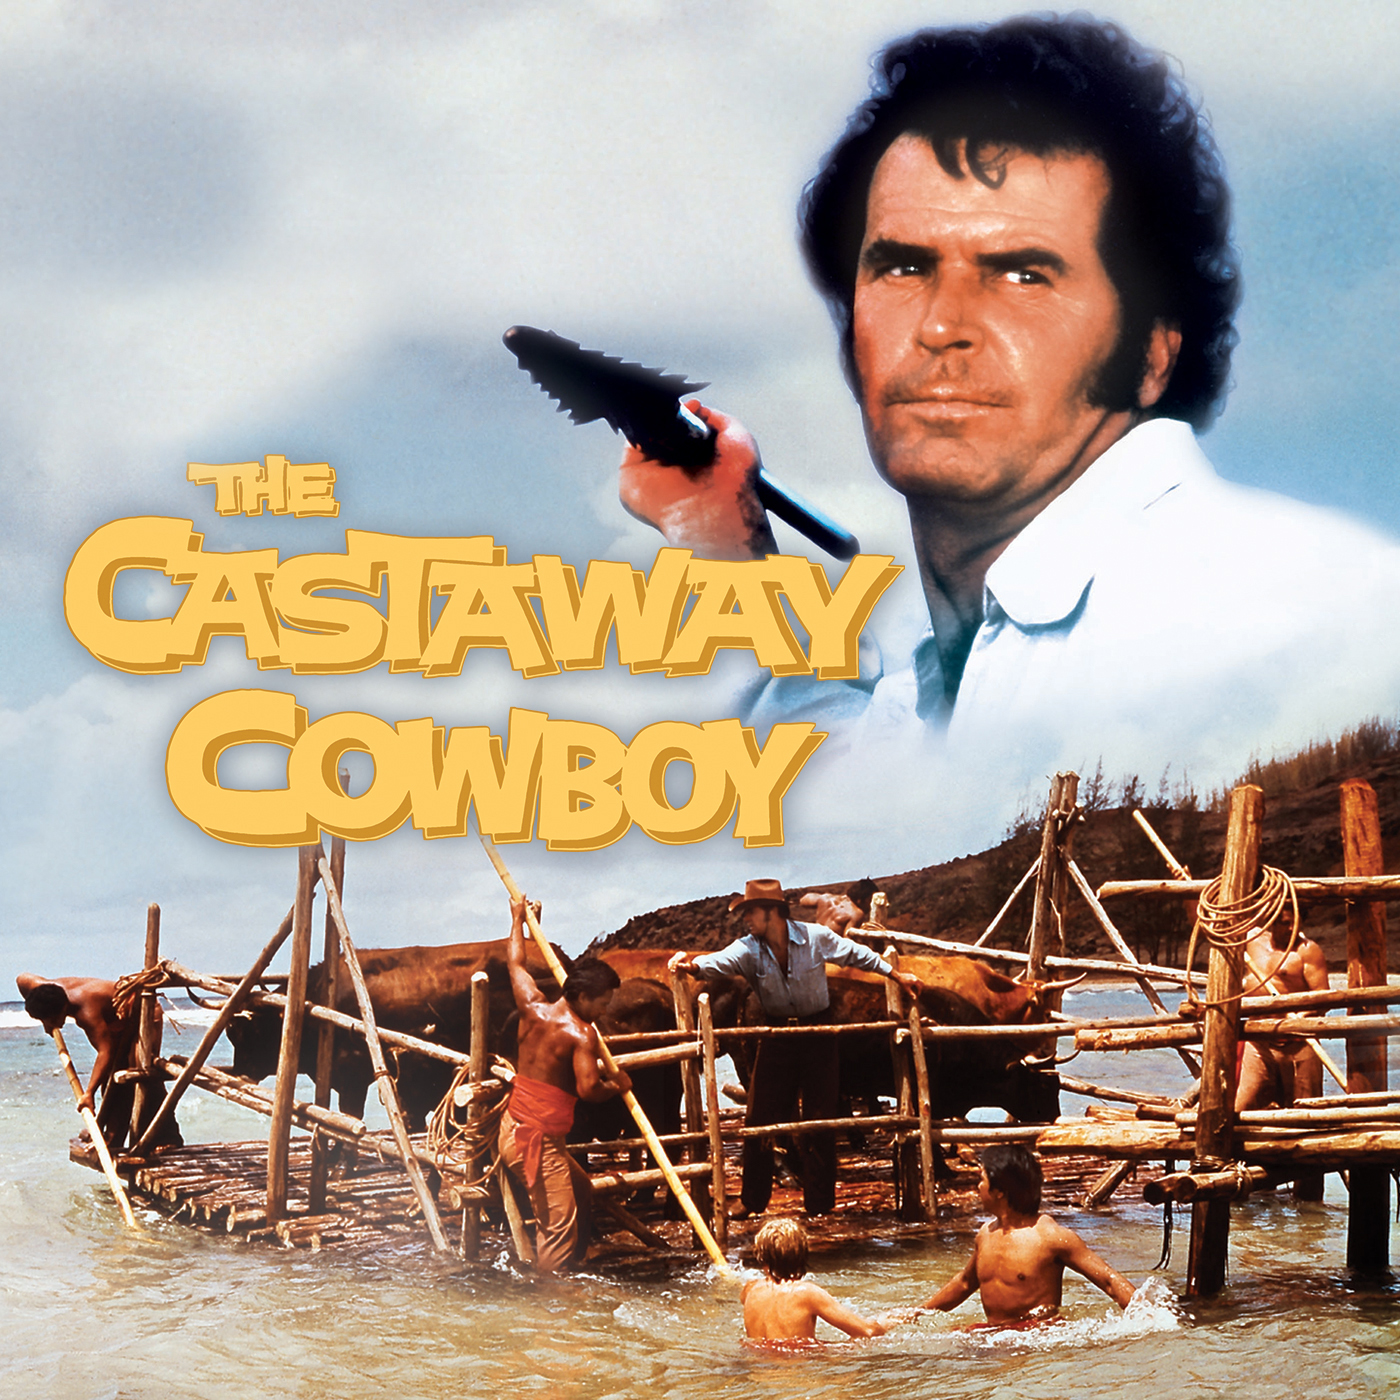 Castaway Cowboy